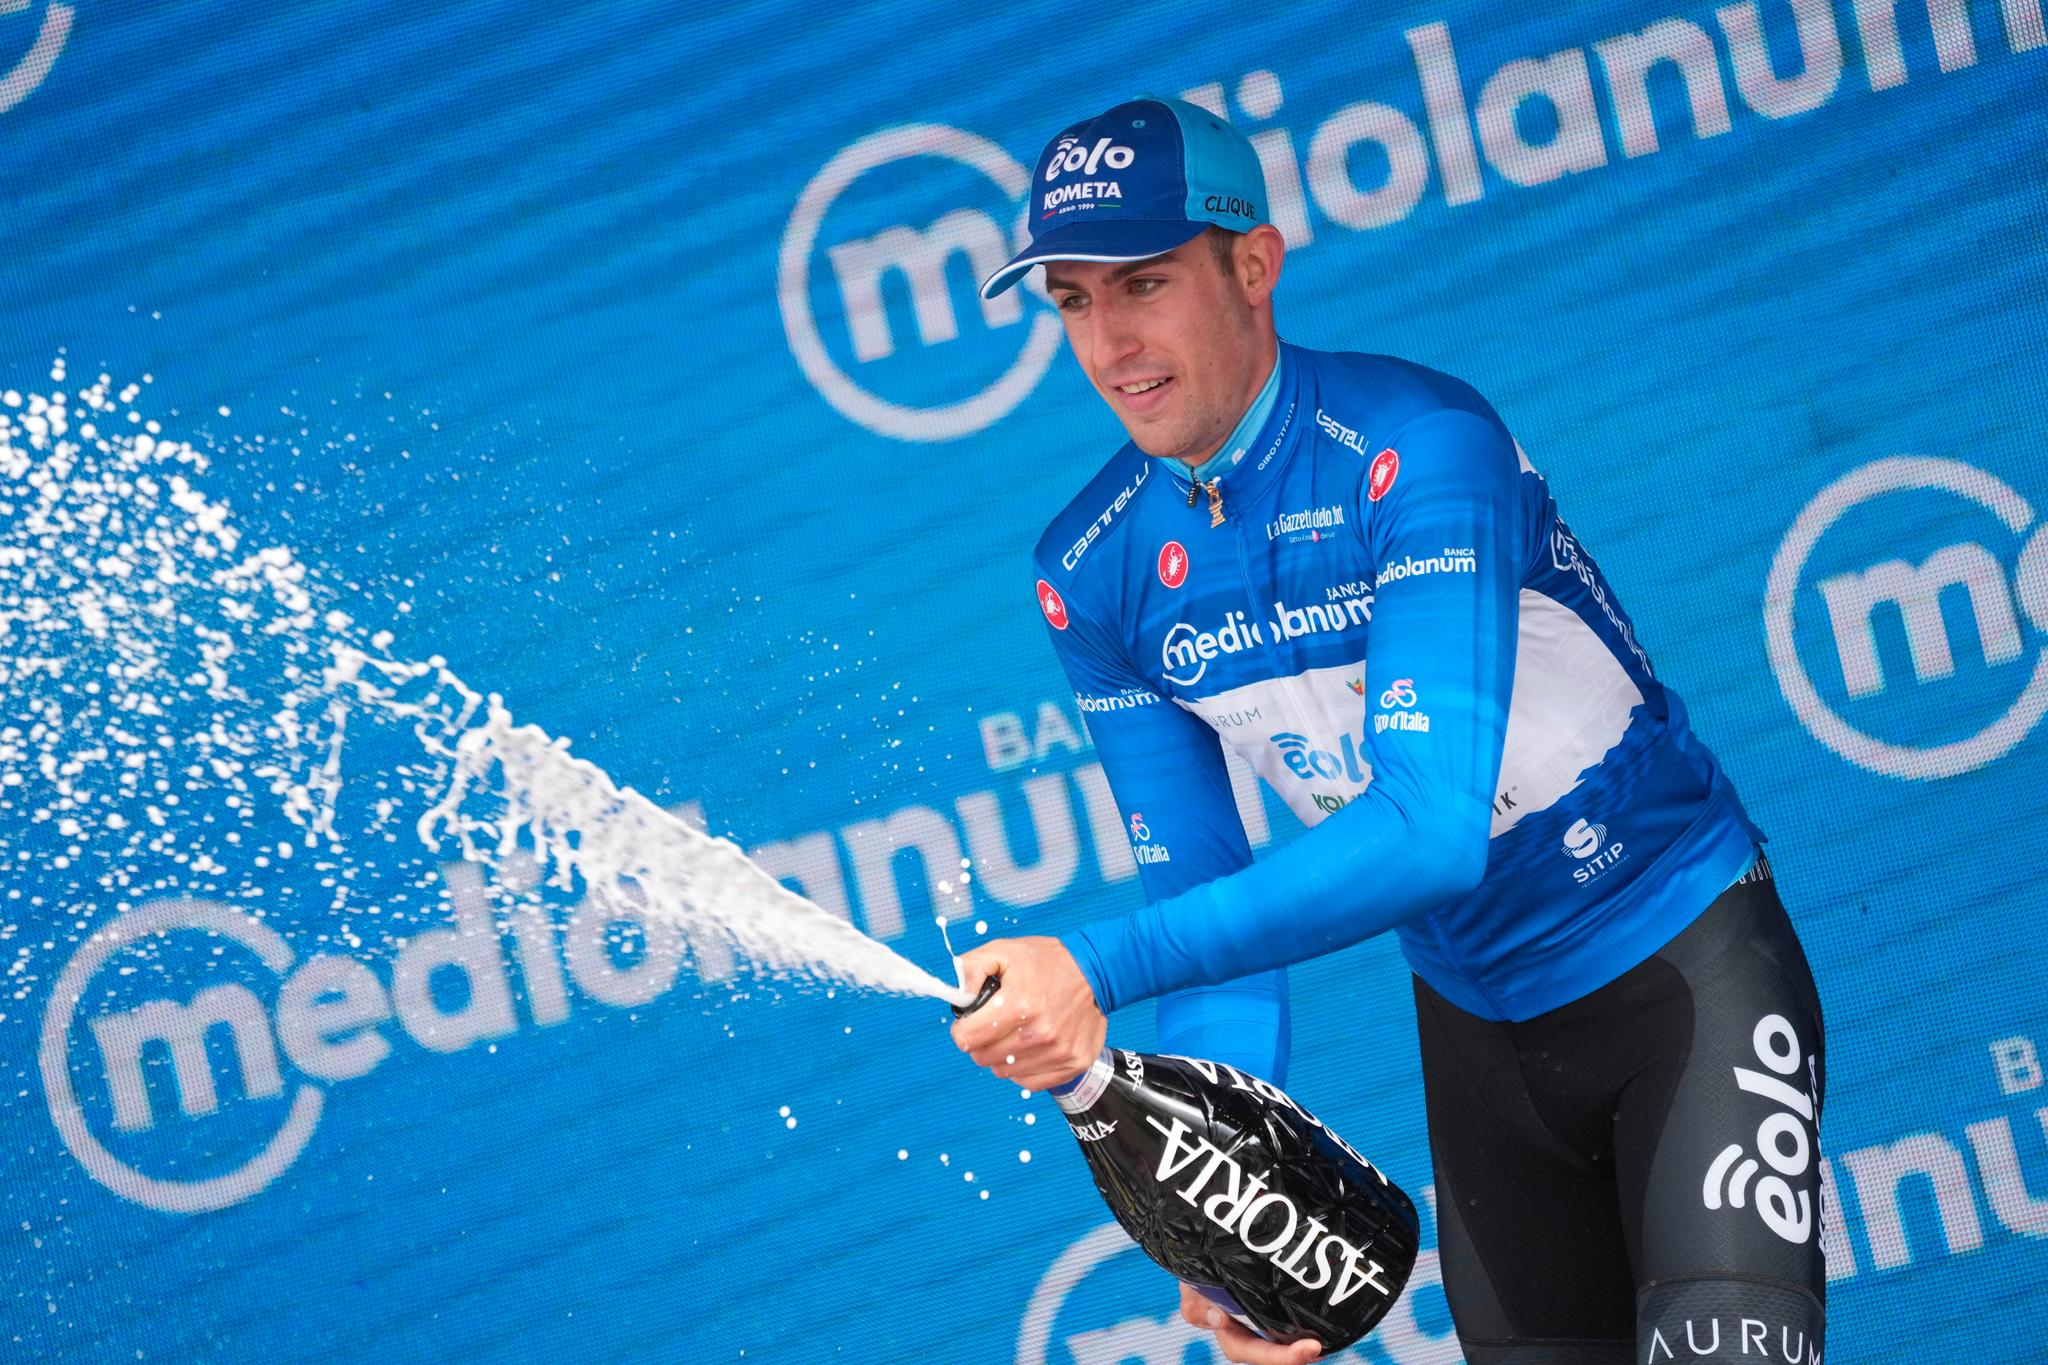 VANT FREDAG: Italienske Davide Bais tok etappeseieren i Italia fredag og feiret med boblesprut. 